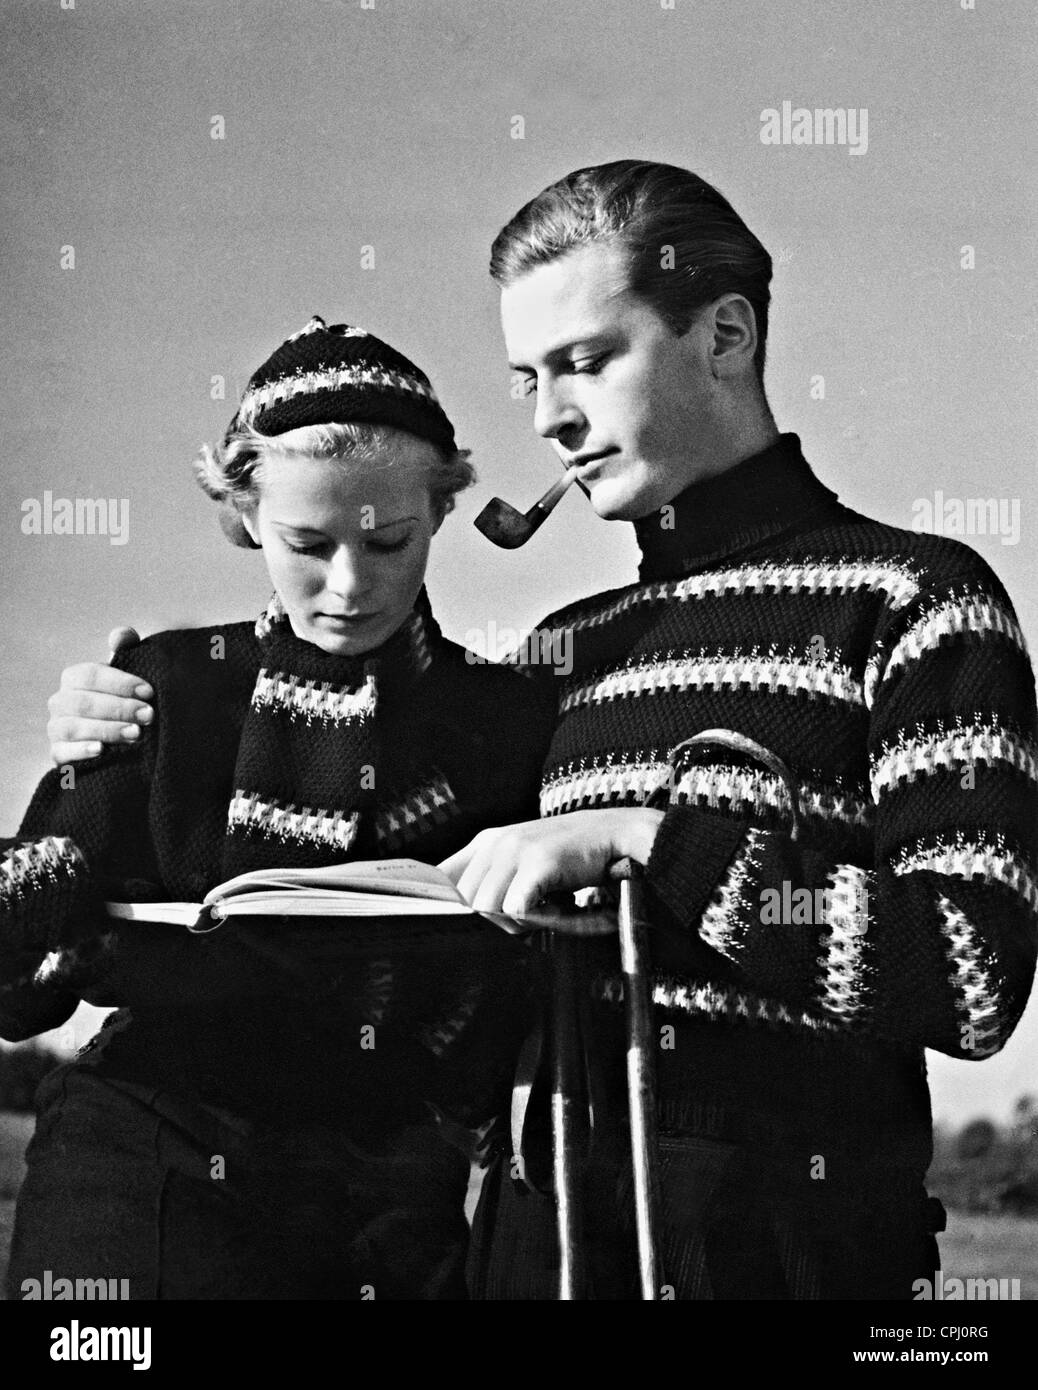 Juergens caillé ski modèles fashions, 1934 Banque D'Images